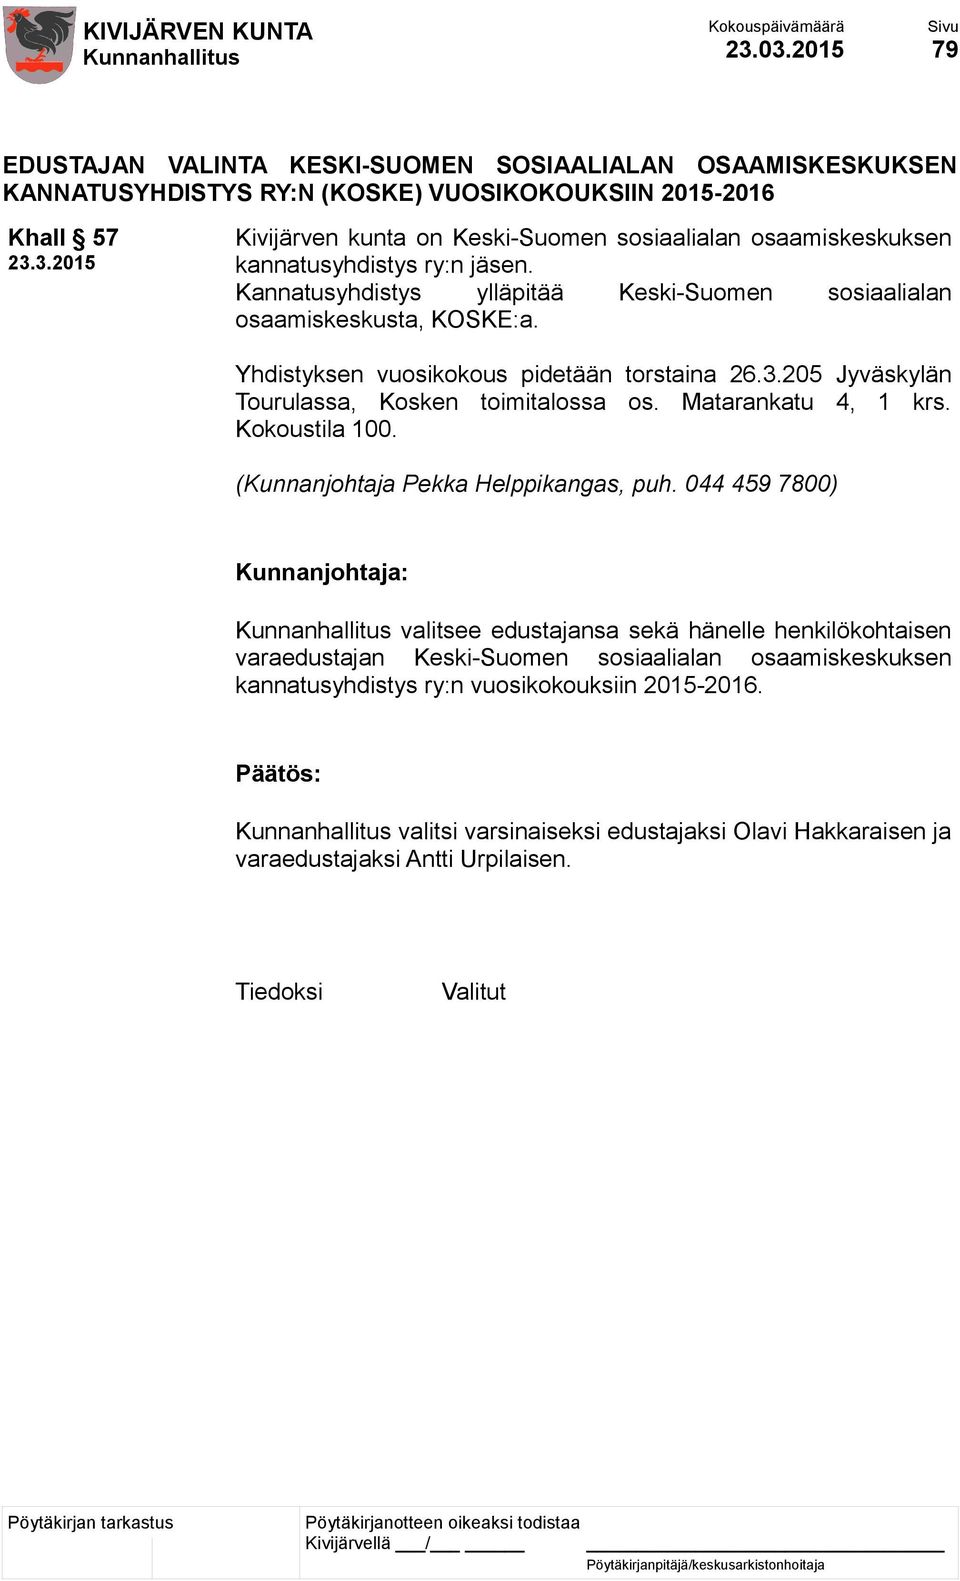 osaamiskeskuksen kannatusyhdistys ry:n jäsen. Kannatusyhdistys ylläpitää Keski-Suomen sosiaalialan osaamiskeskusta, KOSKE:a. Yhdistyksen vuosikokous pidetään torstaina 26.3.